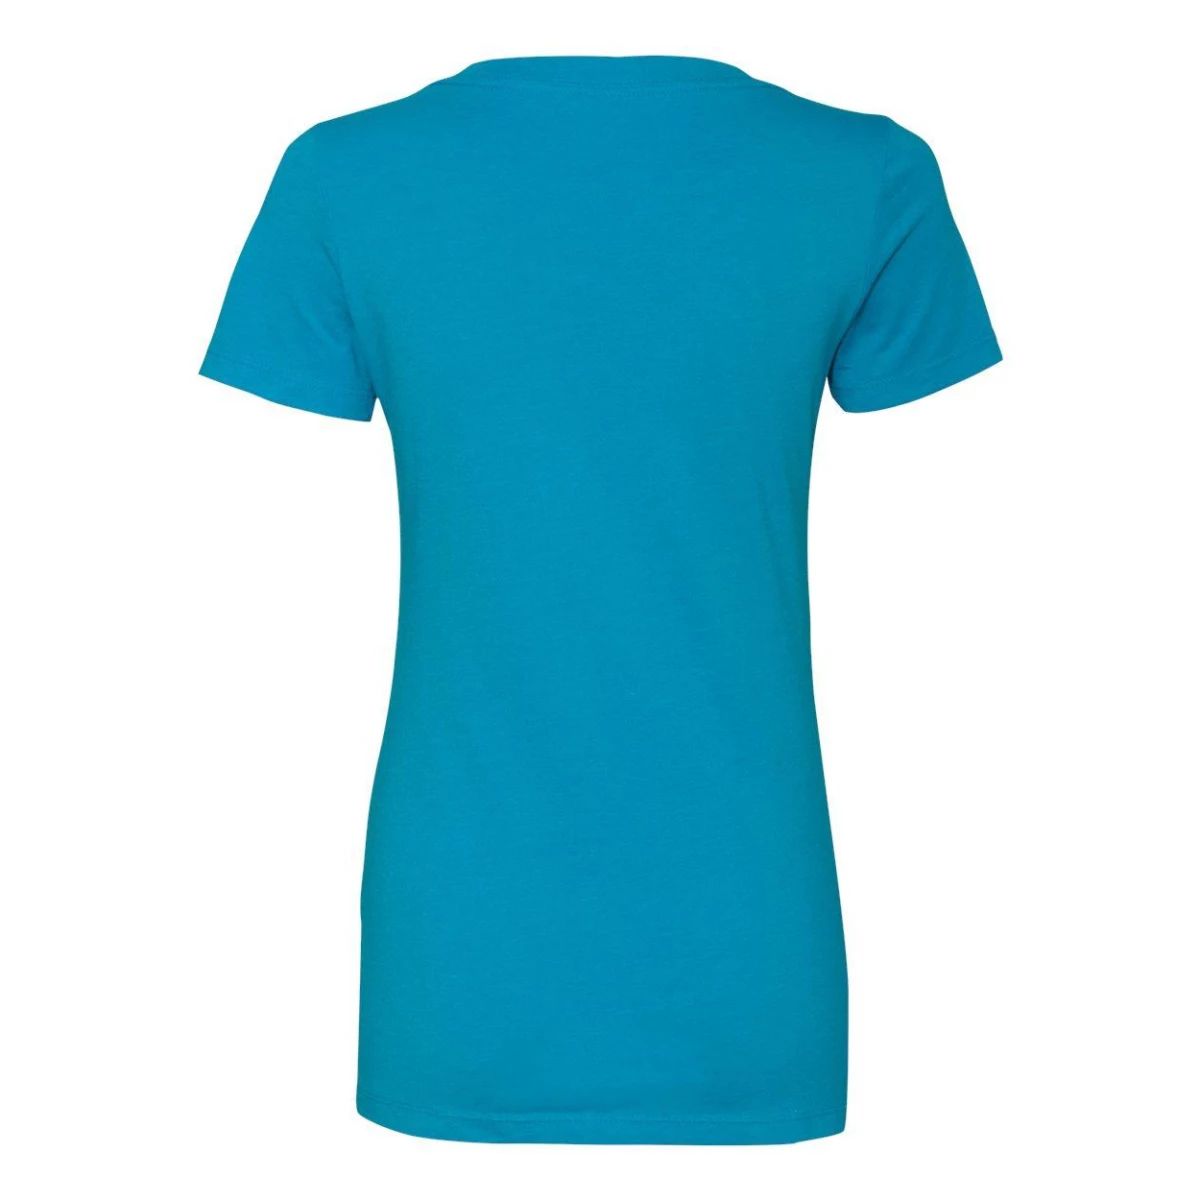 Женская футболка Next Level CVC с глубоким V-образным вырезом Next Level платье блузка slinky next цвет stone